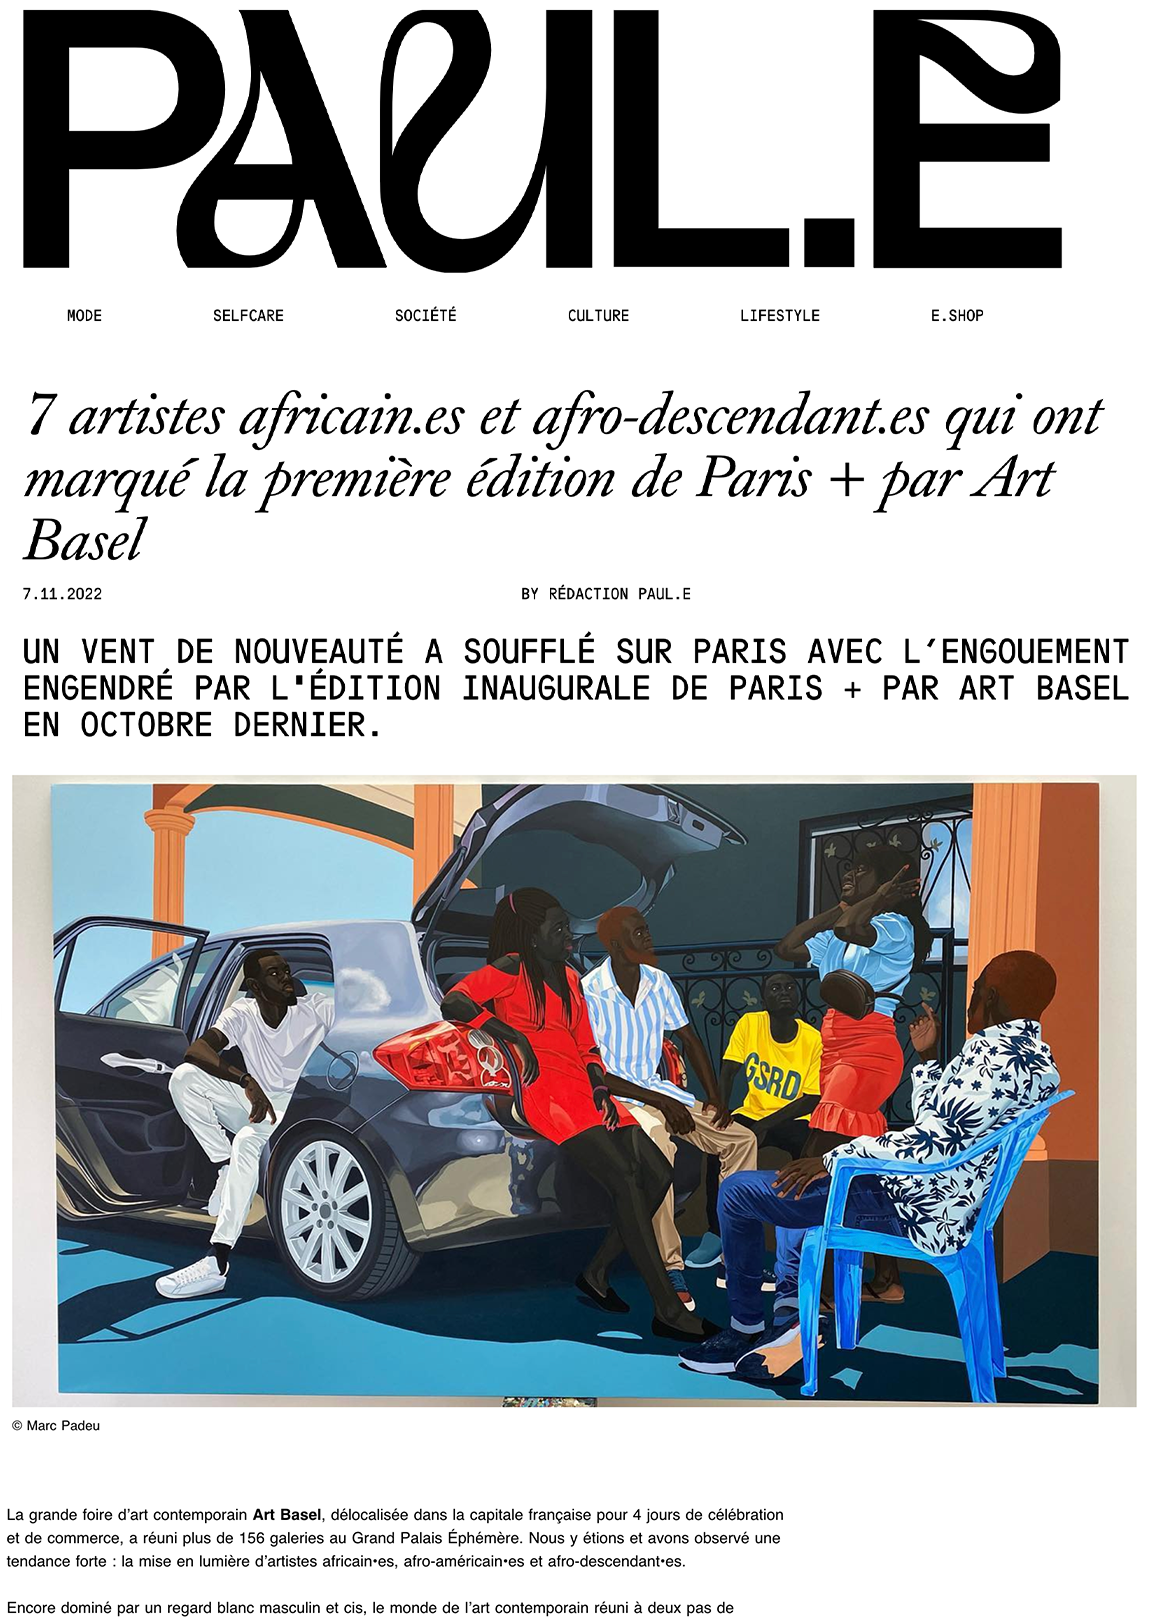 7 artistes africain.es et afro-descendant.es qui ont marqué la première édition de Paris + par Art Basel